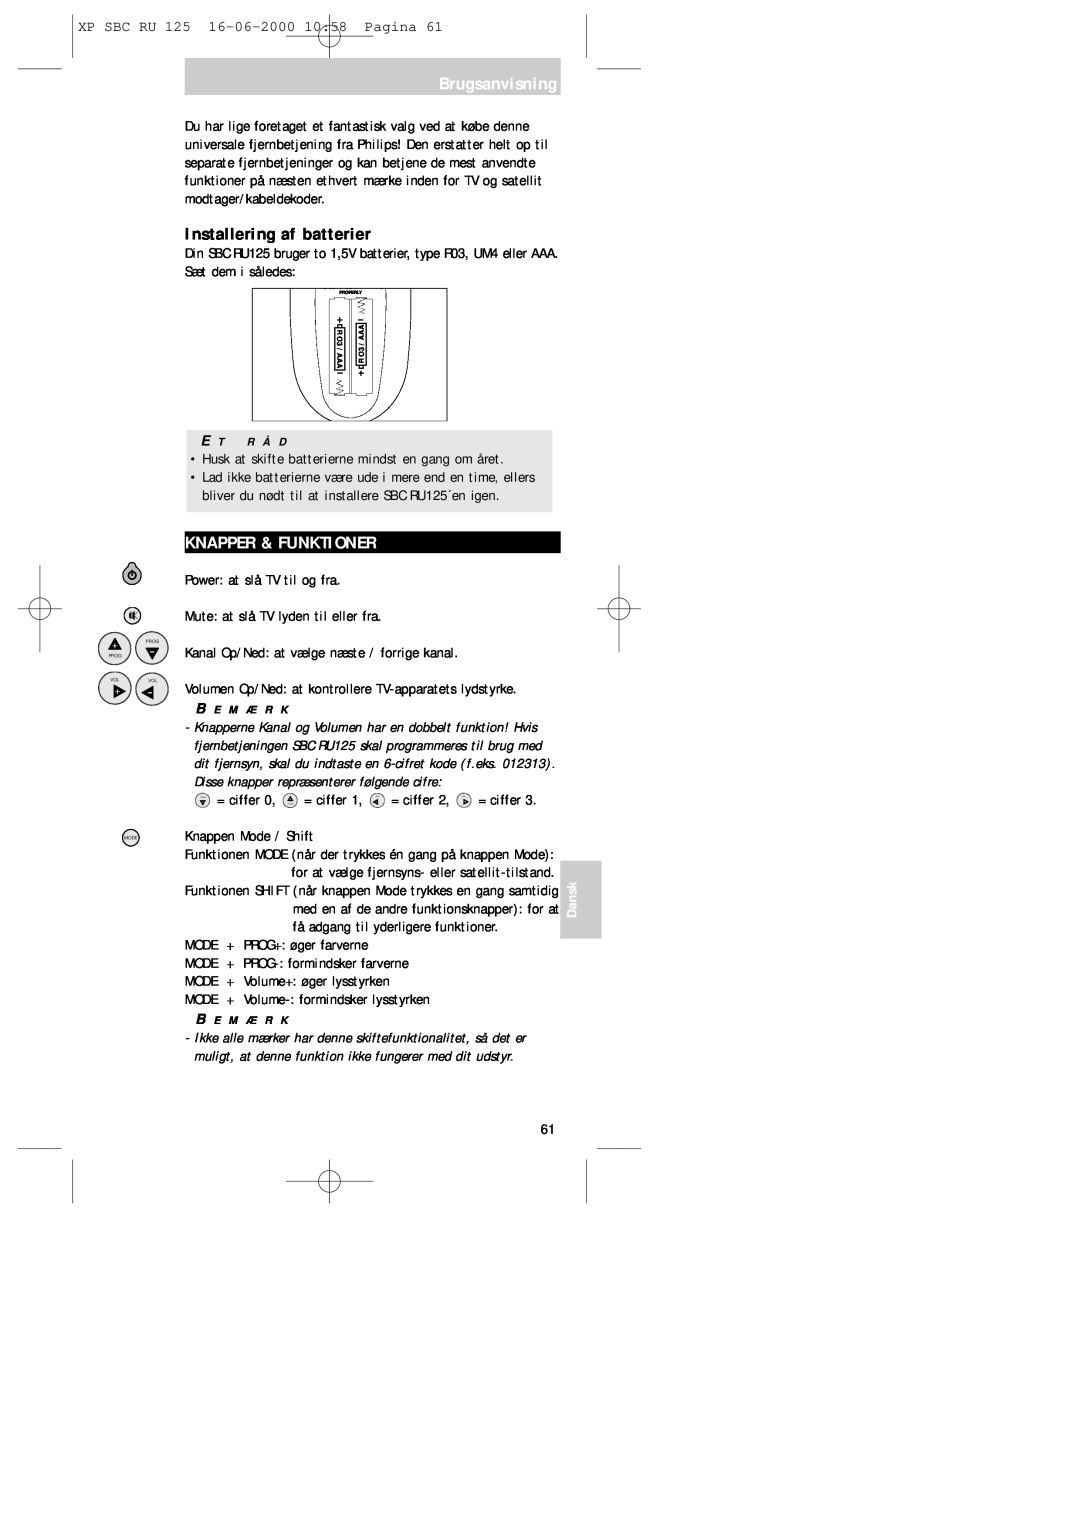 Philips RU125 manual Brugsanvisning, Installering af batterier, Knapper & Funktioner, Dansk 